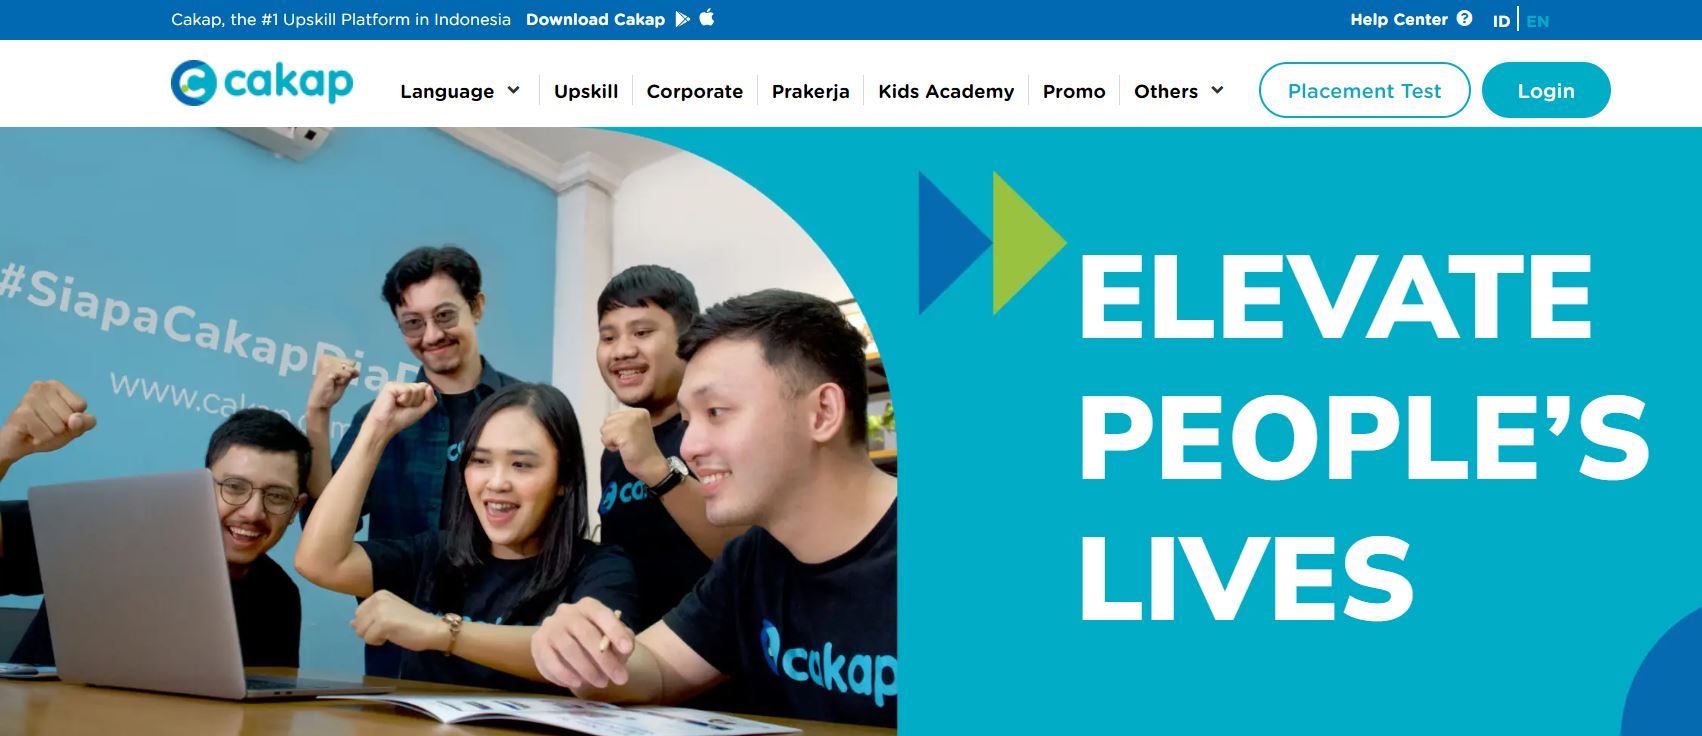 インドネシアEdTechの雄・オンライン外国語学習プラットフォーム「Cakap」とは